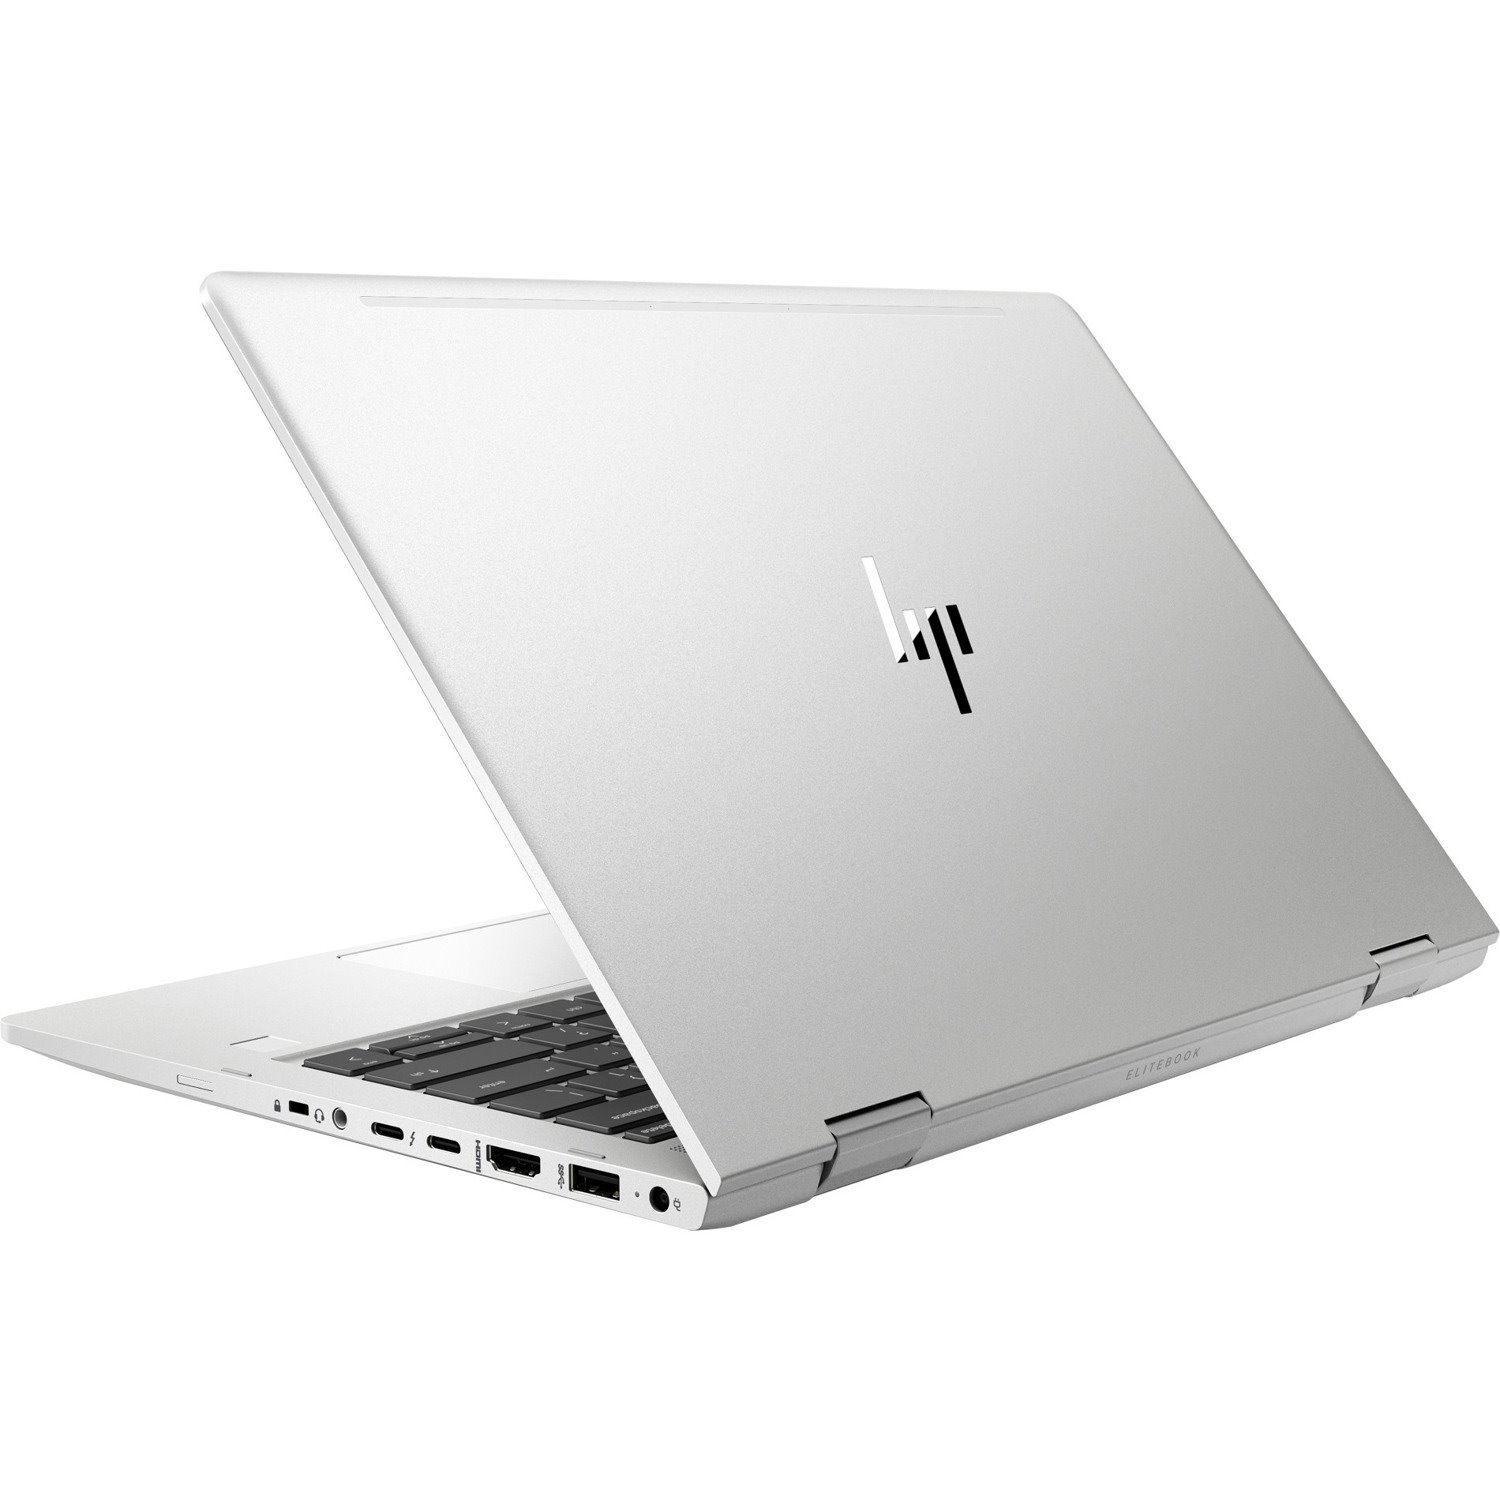 HP EliteBook x360 830 G6 13.3" Touchscreen Convertible 2 in 1 Notebook - 1920 x 1080 - Intel Core i5 8th Gen i5-8365U Quad-core (4 Core) 1.60 GHz - 8 GB Total RAM - 256 GB SSD